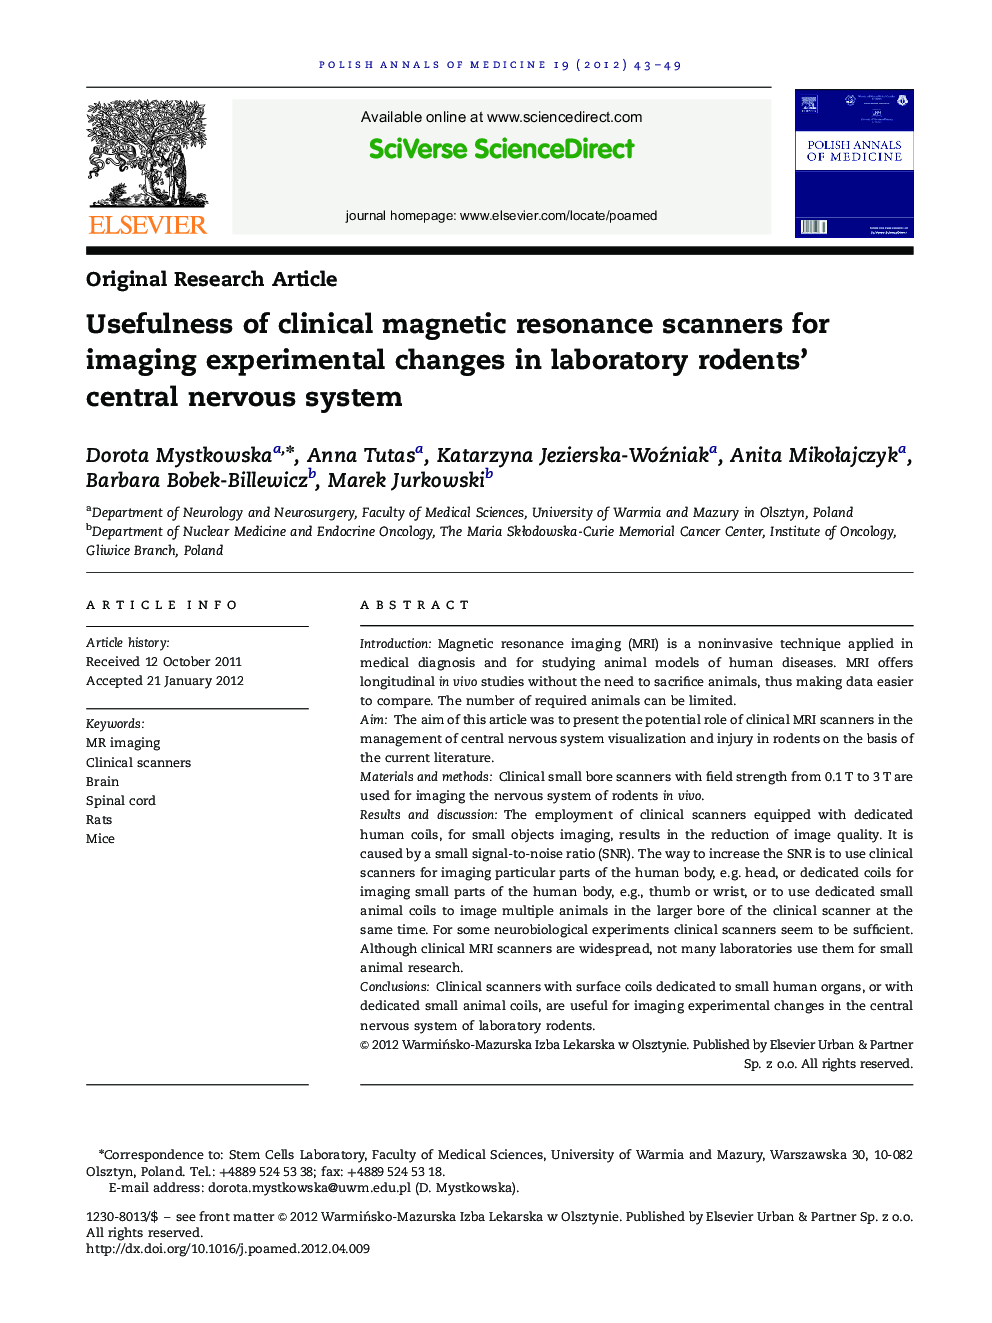 مفید بودن اسکنرهای رزونانس مغناطیسی بالینی برای تصویربرداری تغییرات تجربی در سیستم آزمایشگاهی عصبی مرکزی جوندگان 